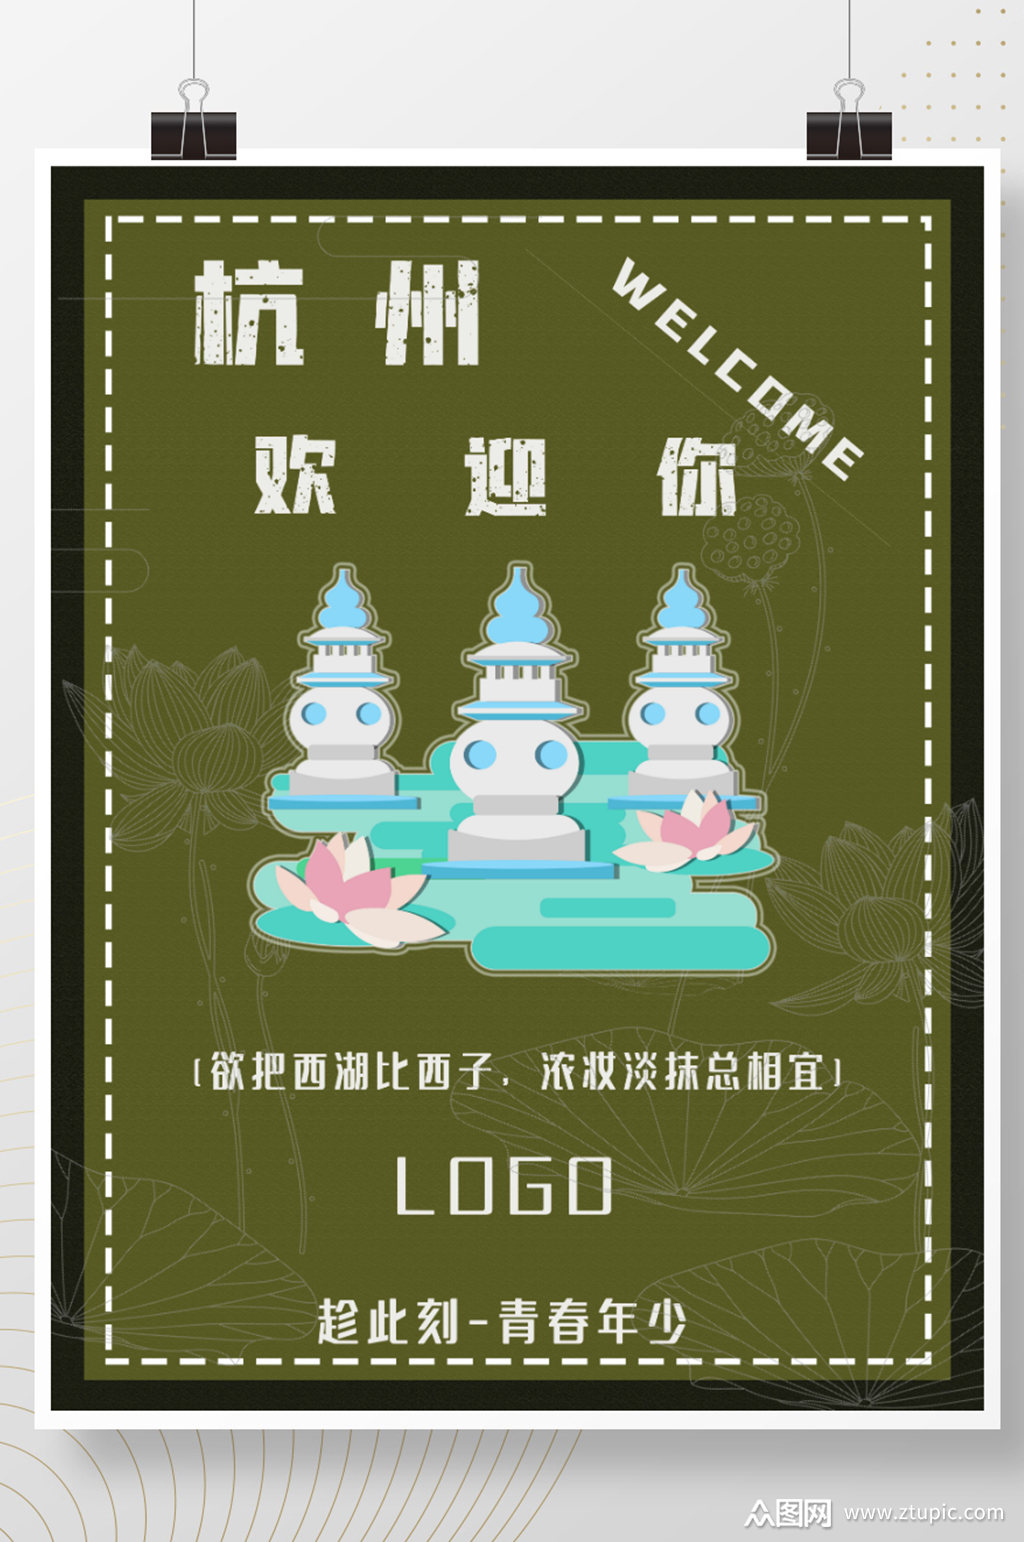 2021杭州西湖欢迎你海报